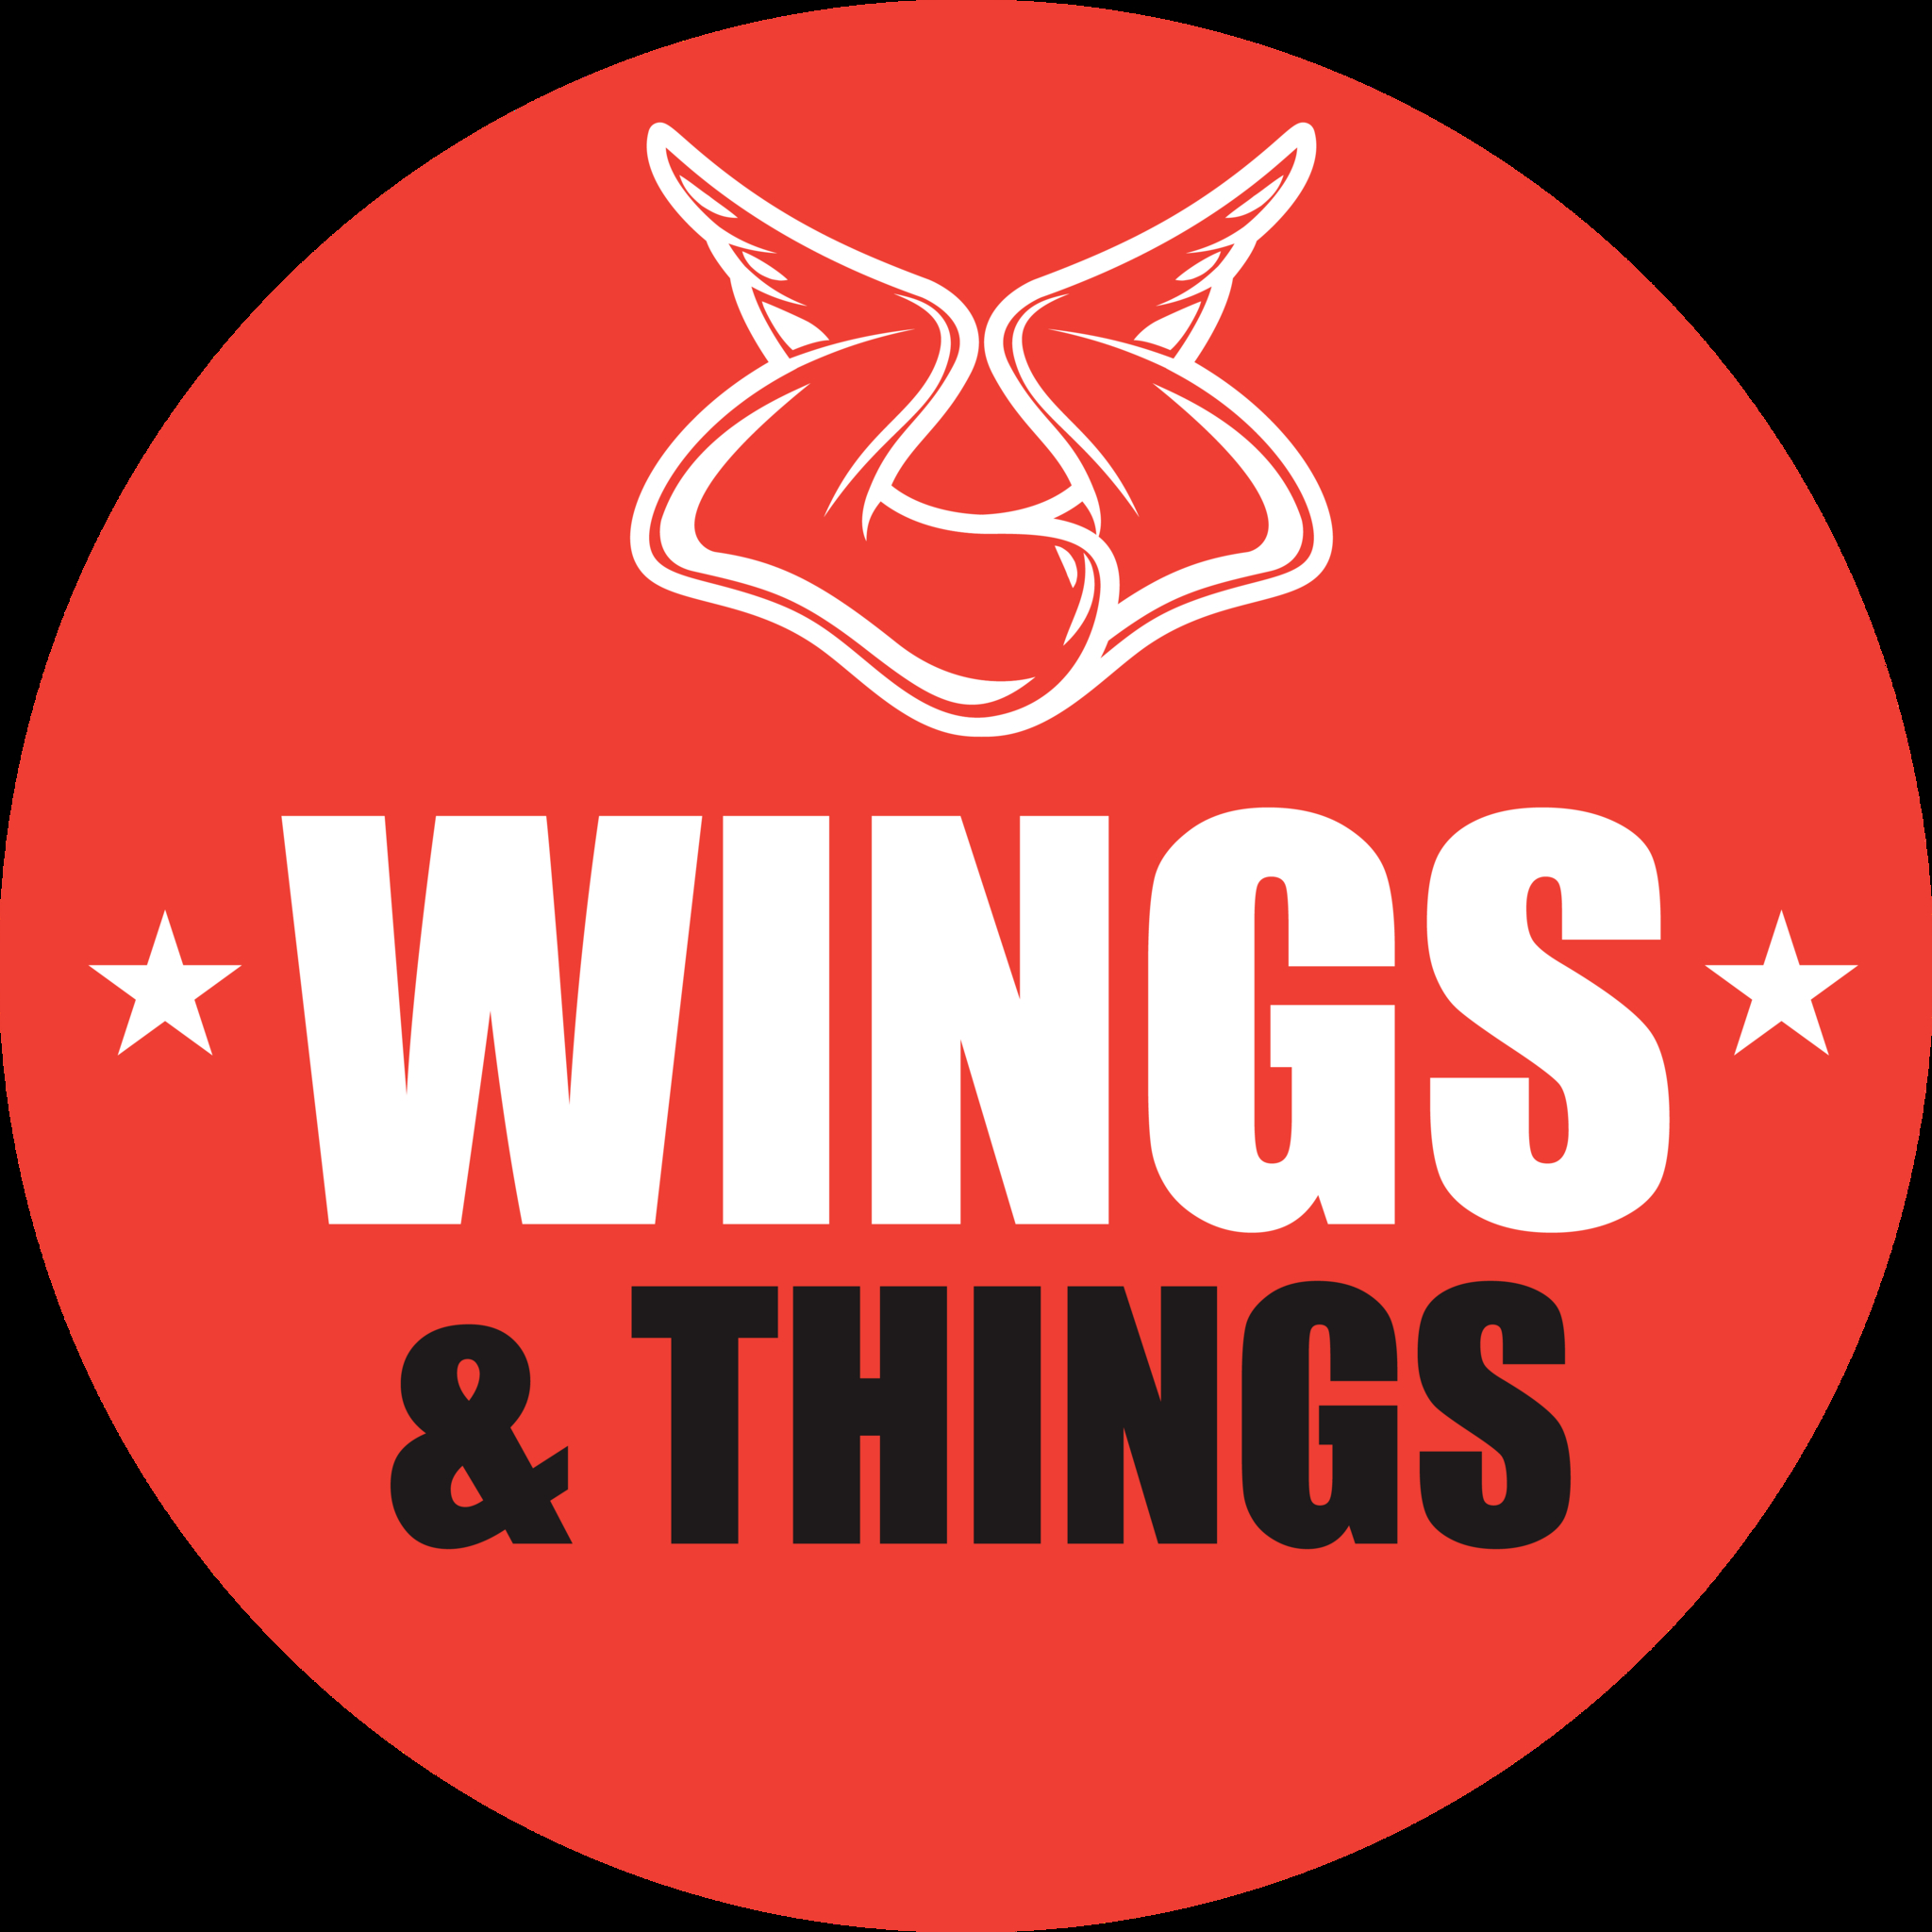 Wings & Things - Restaurants